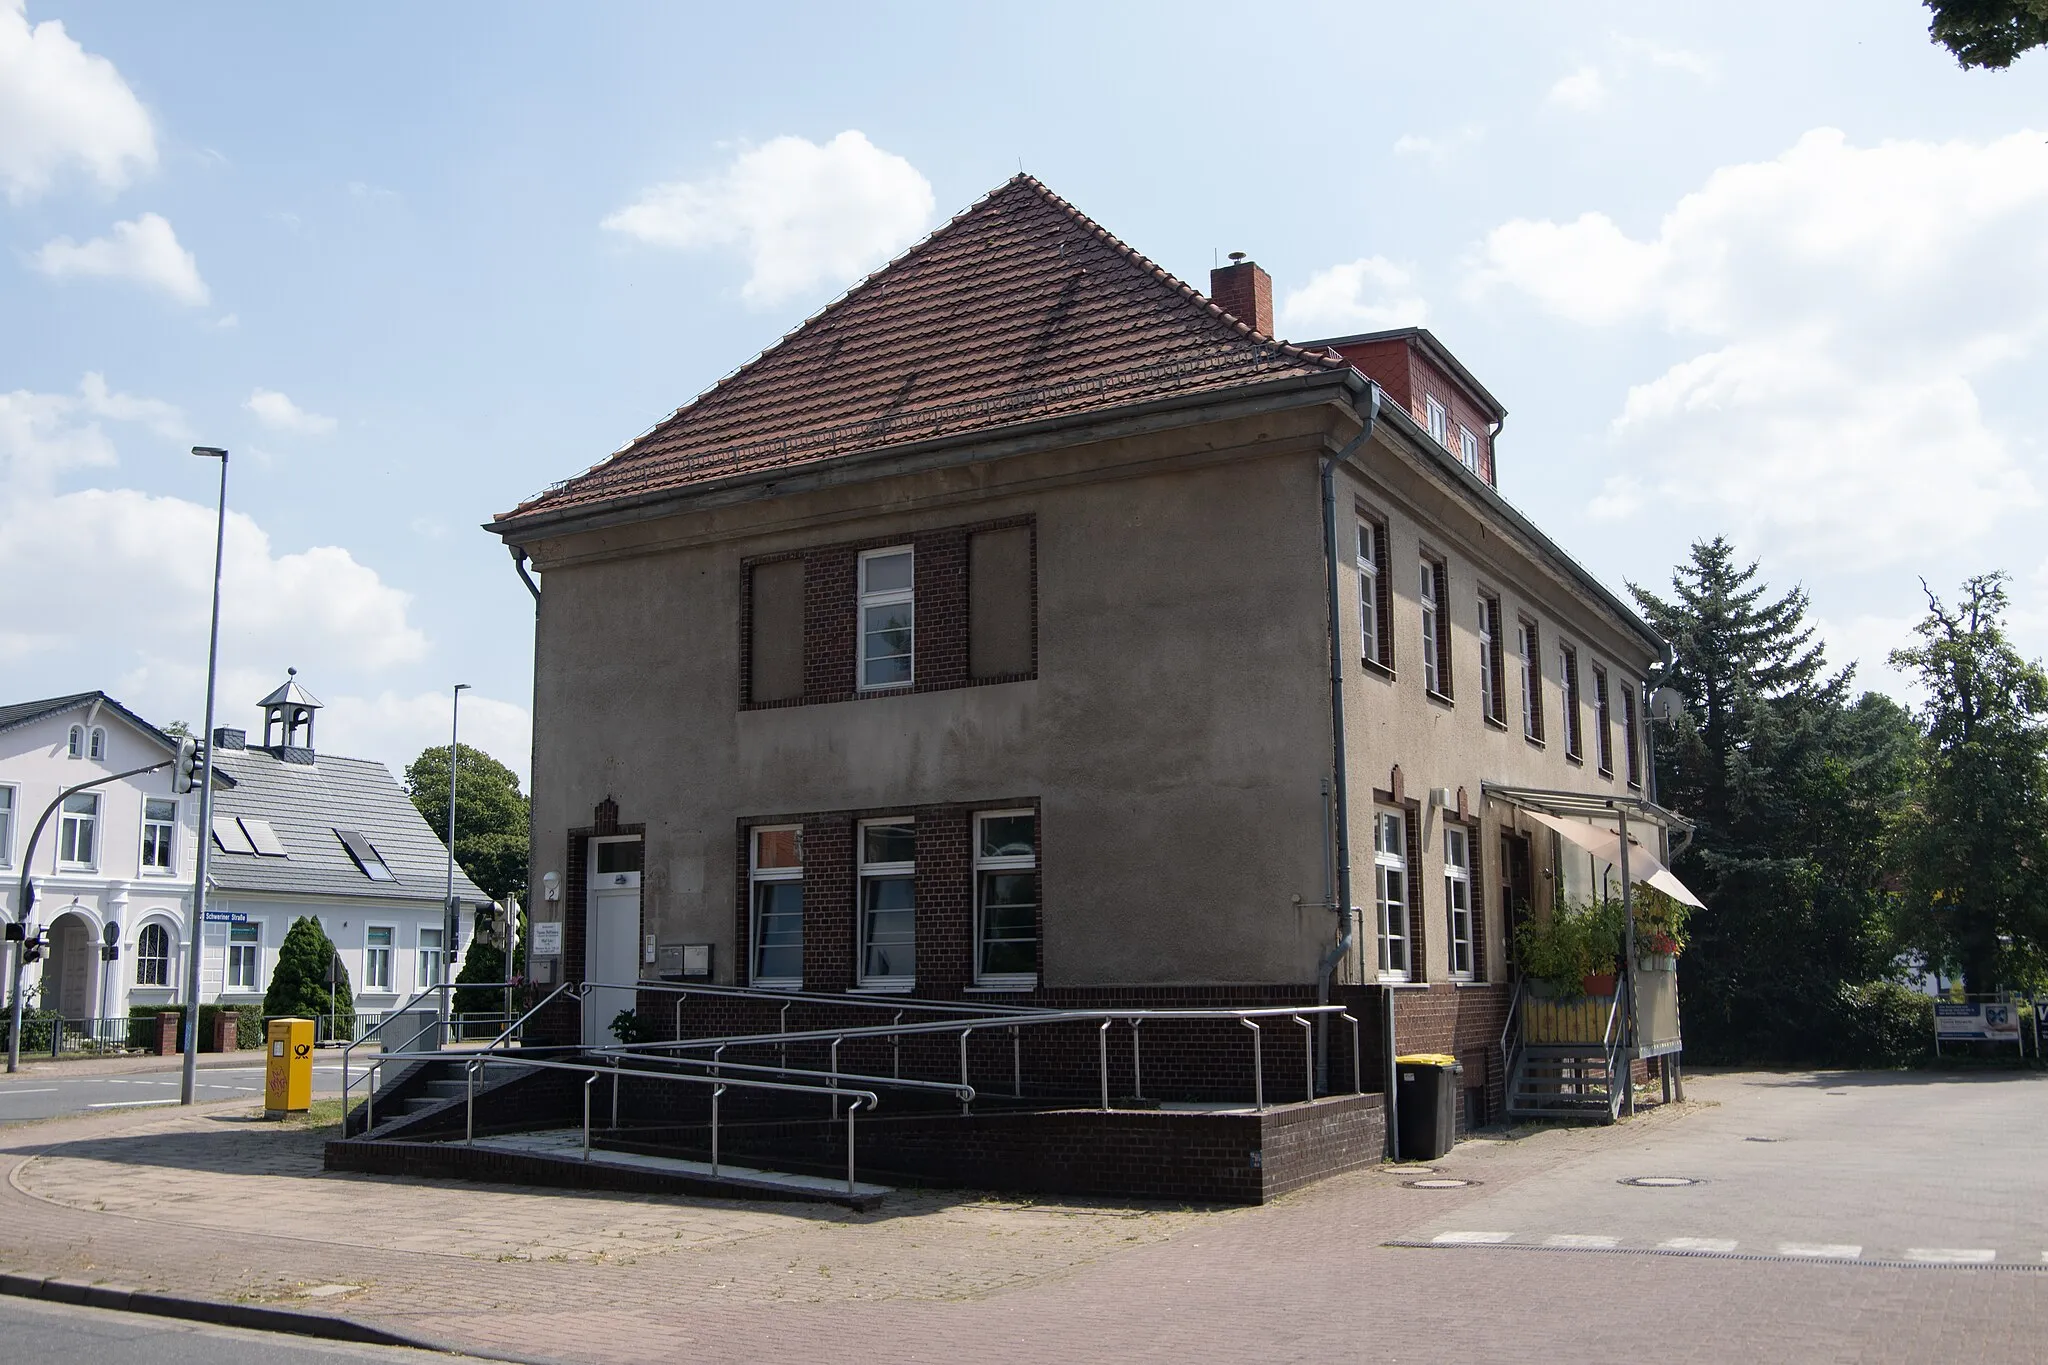 Photo showing: Rehna in Mecklenburg-Vorpommern. Das Gebäude, die Adresse befindet sich im Namen, steht unter Denkmalschutz.